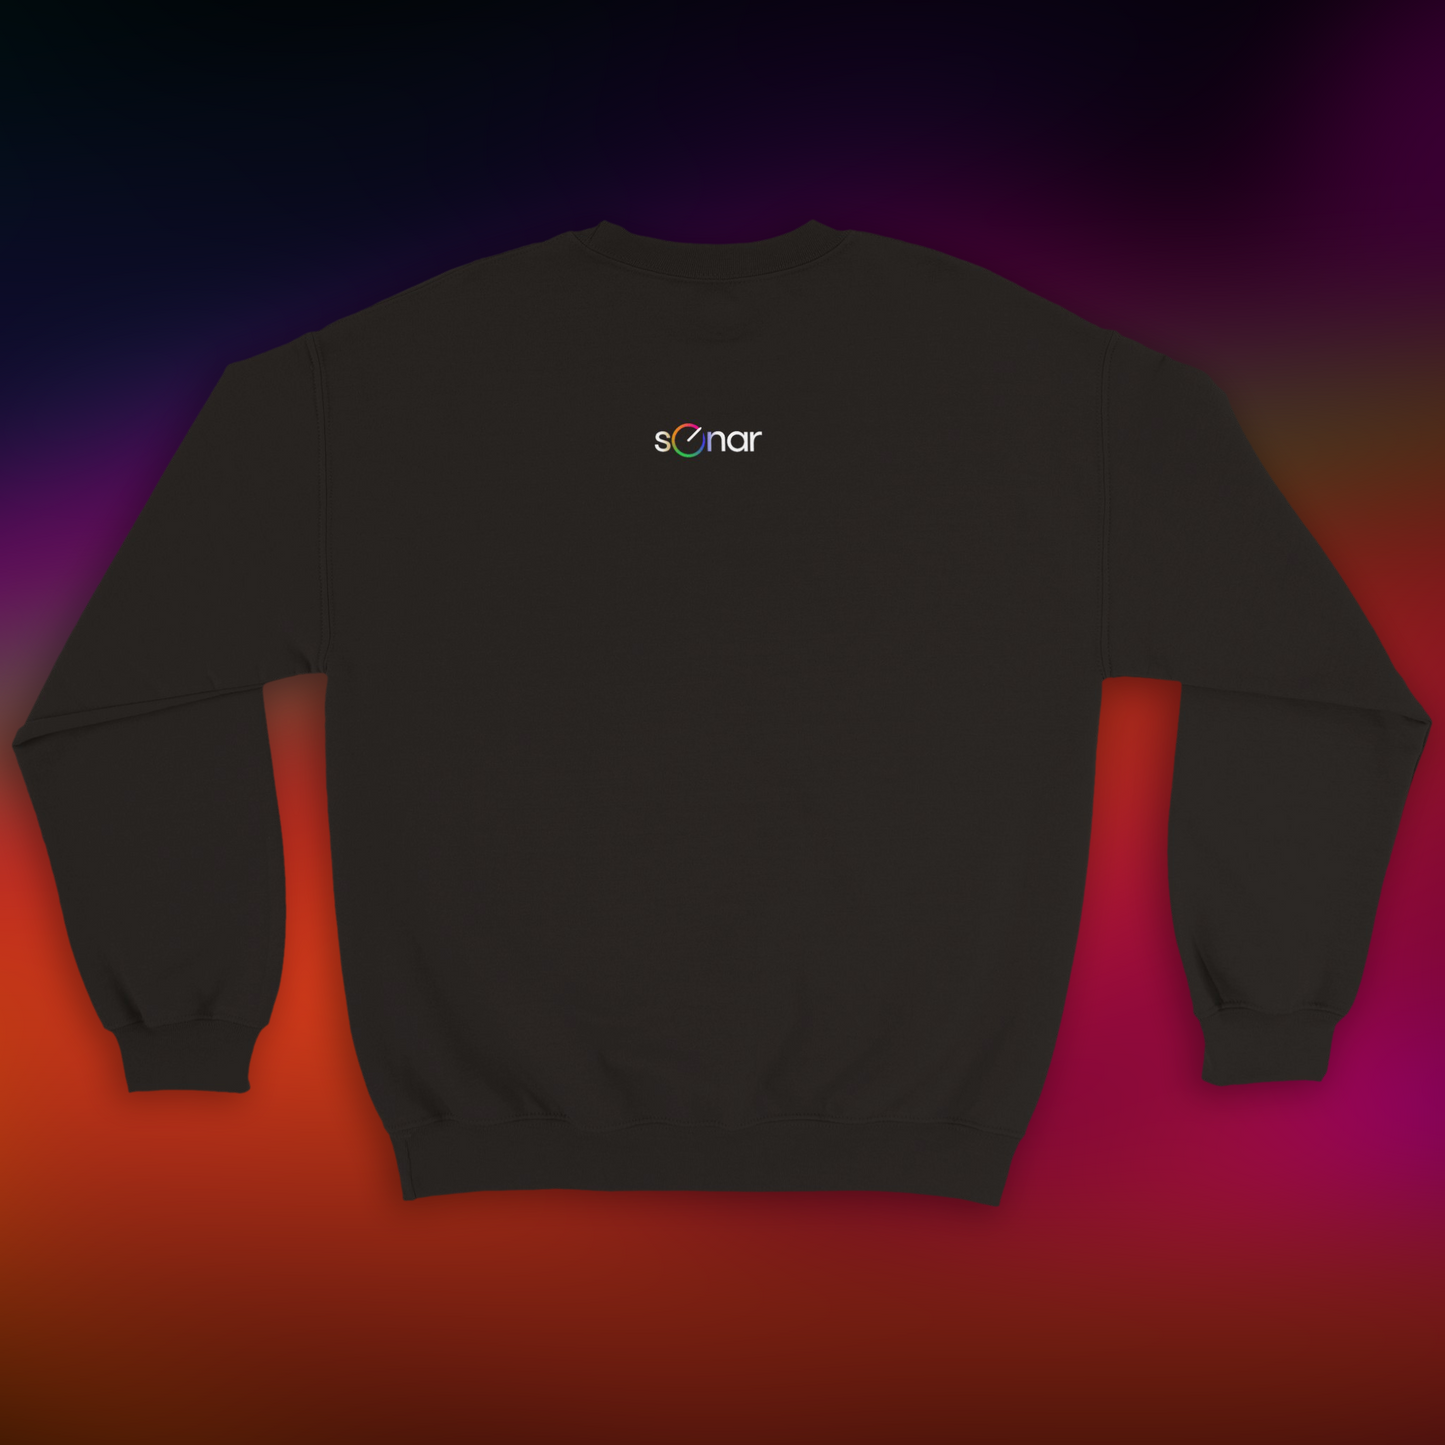 OG Sweatshirt #02